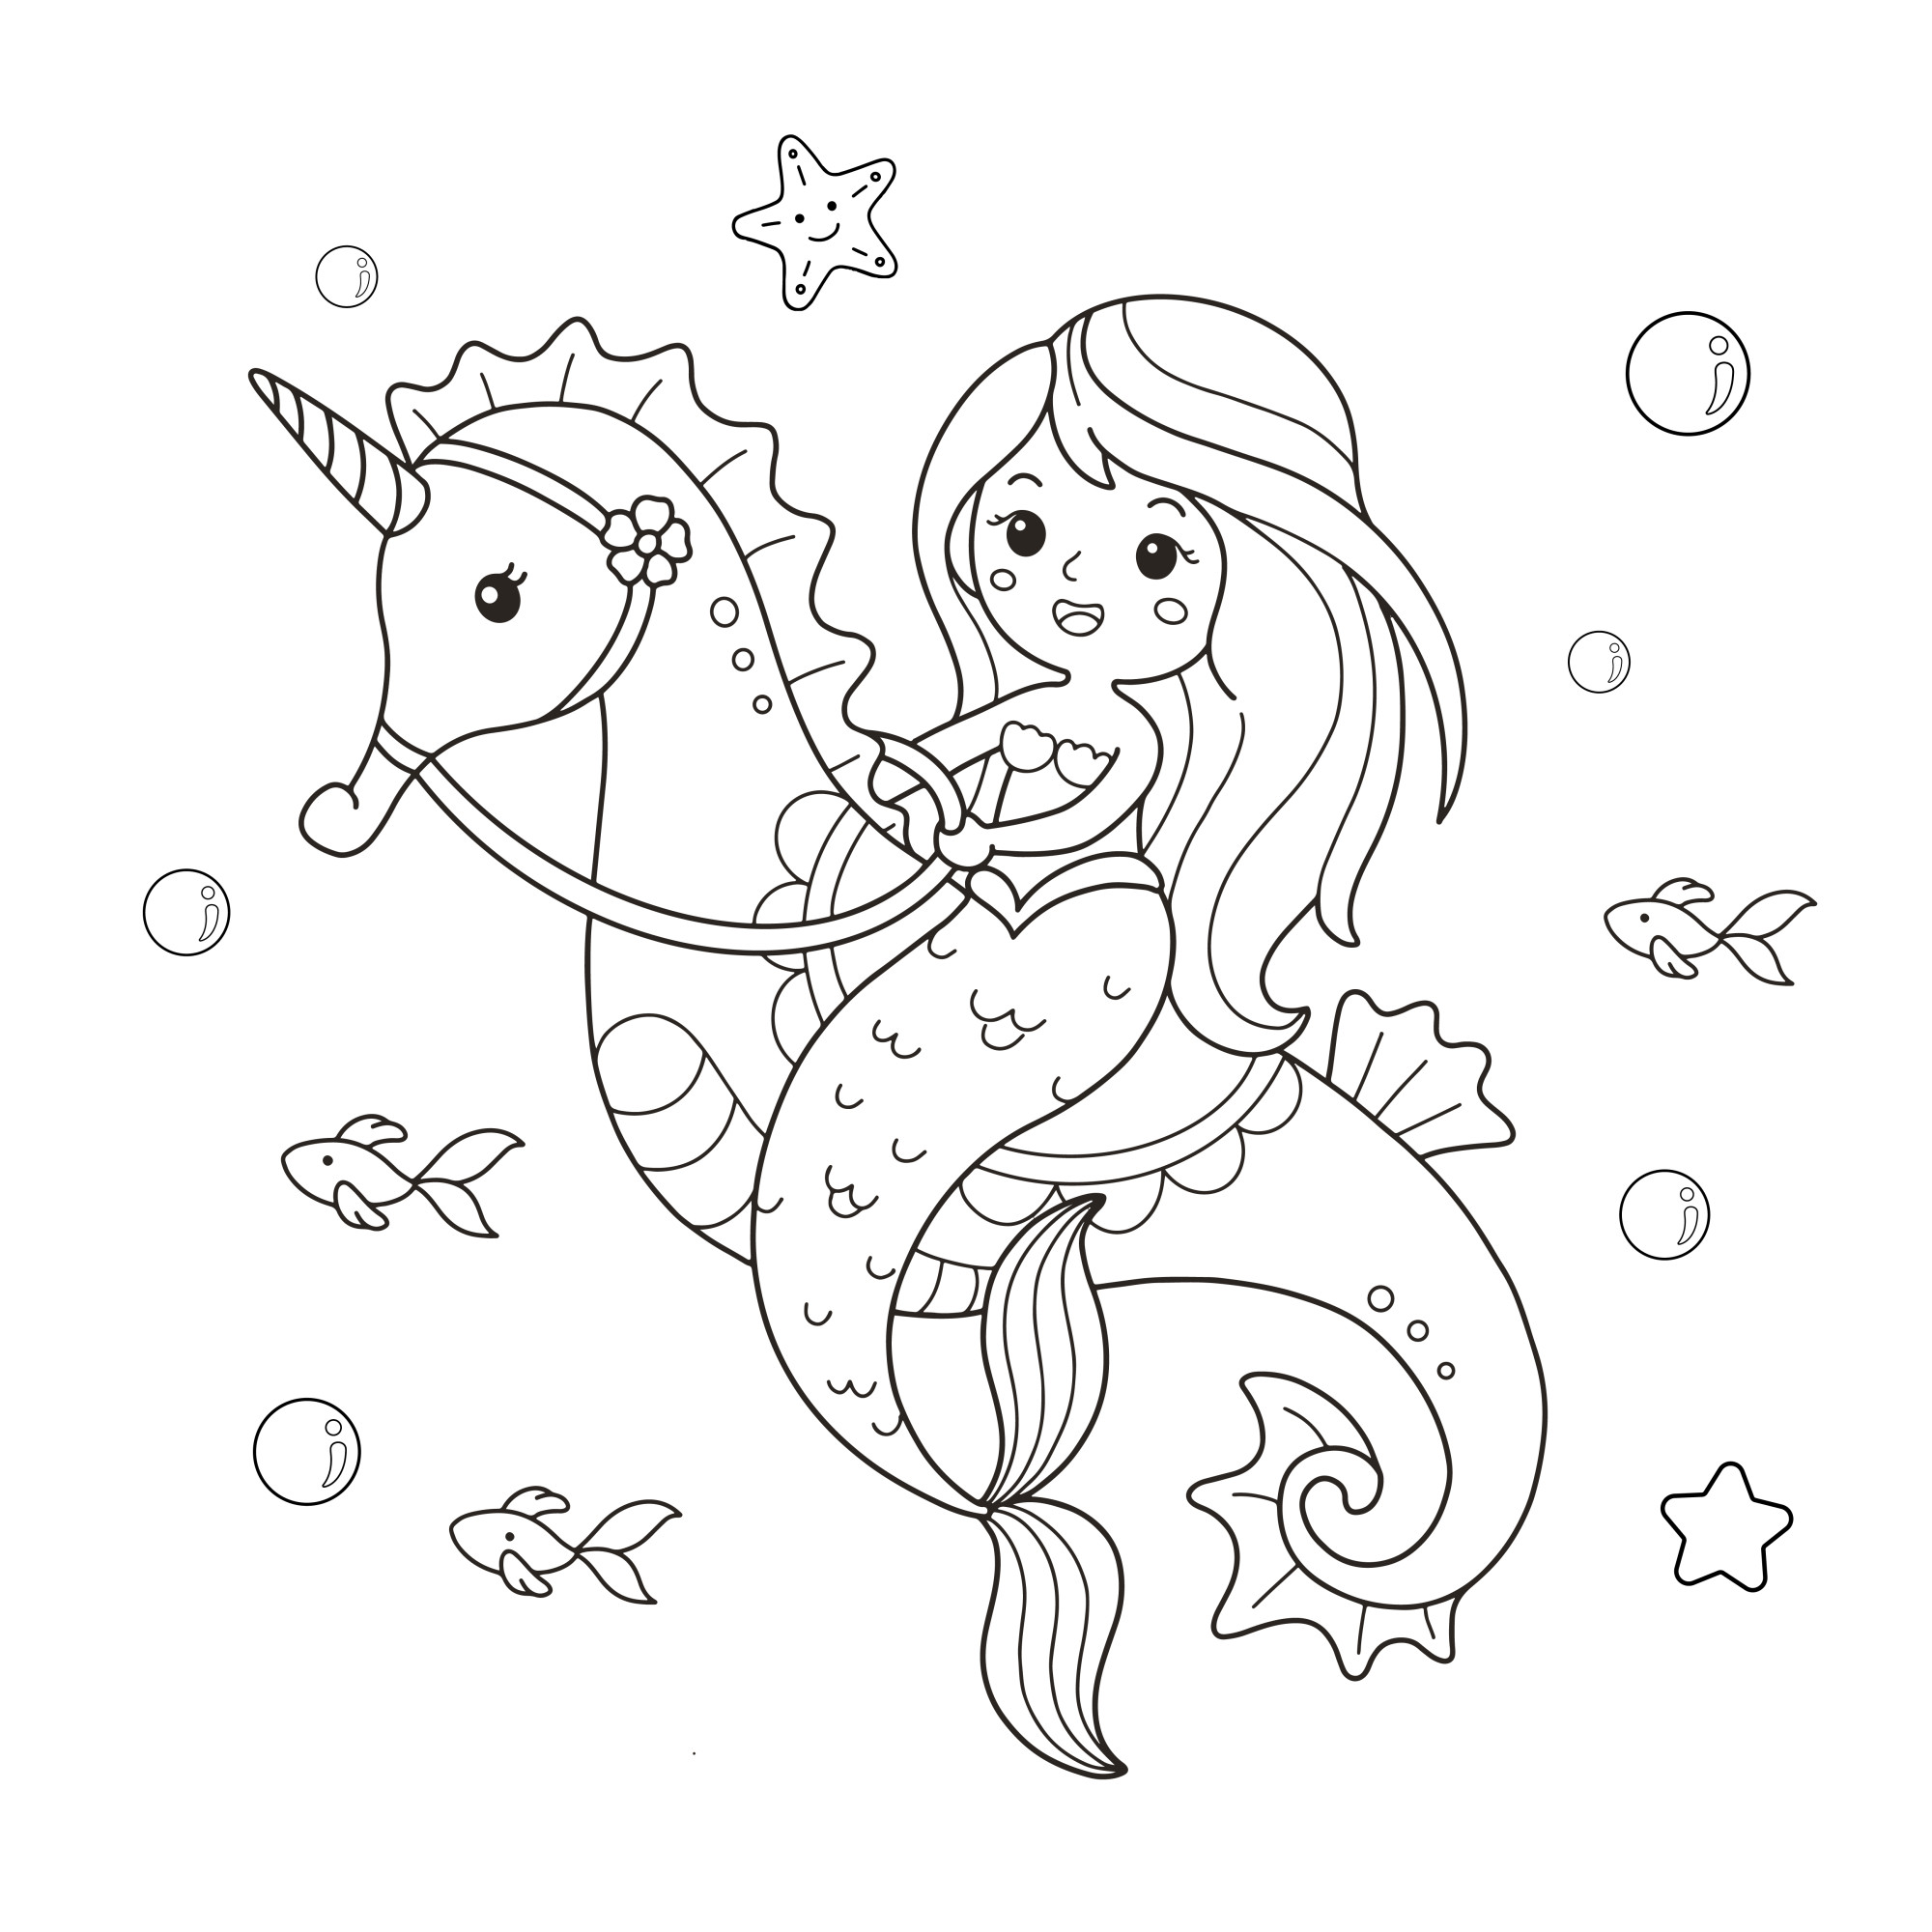 Раскраска для детей: русалка с длинными волосами верхом на морском коньке